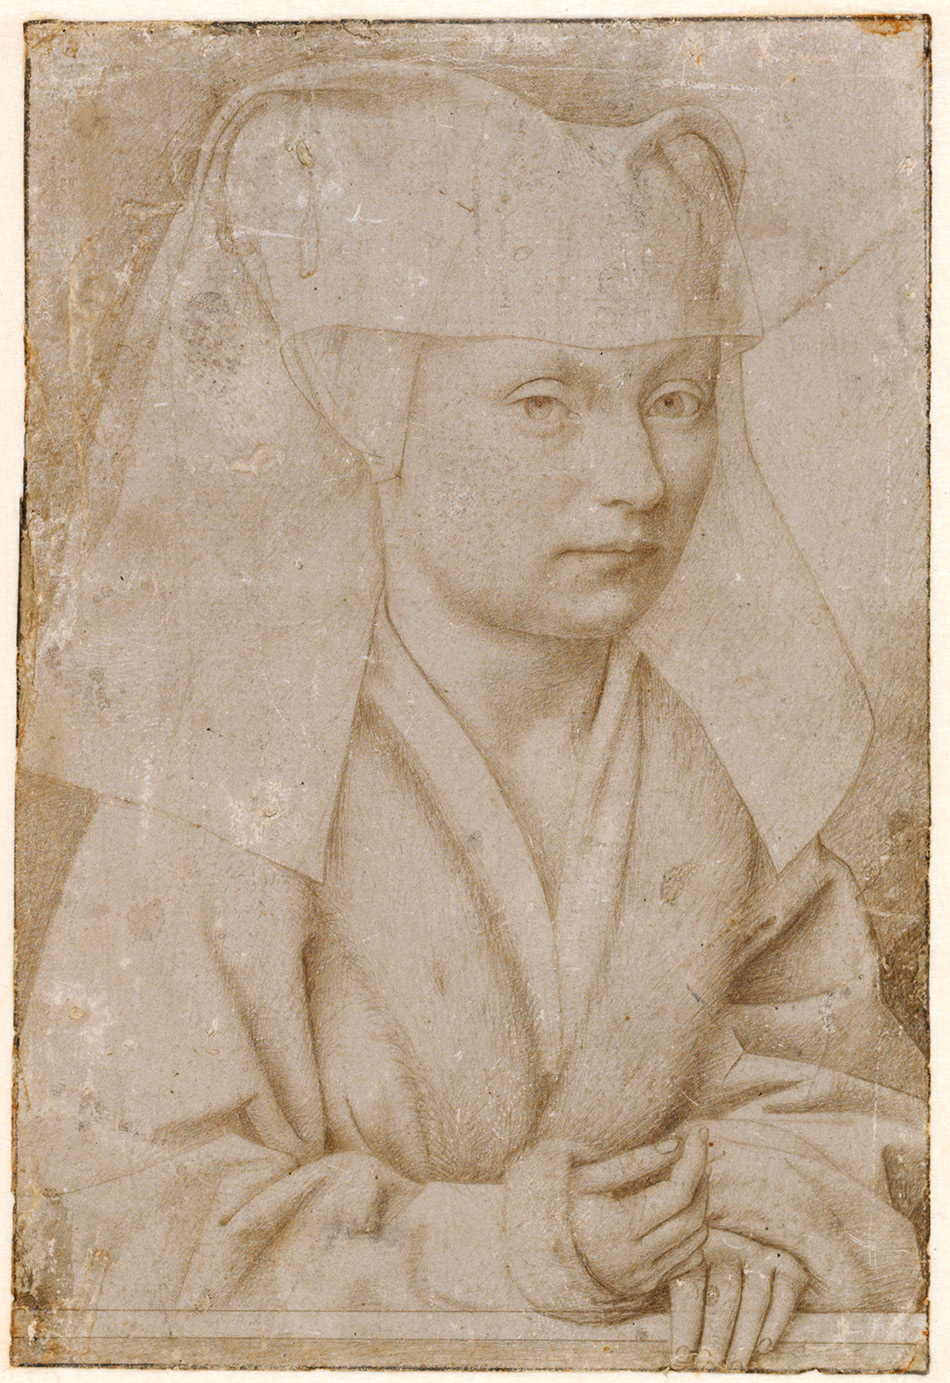 Petrus-Christus_portrait-of-a-young-womn_3957-002_950px_w